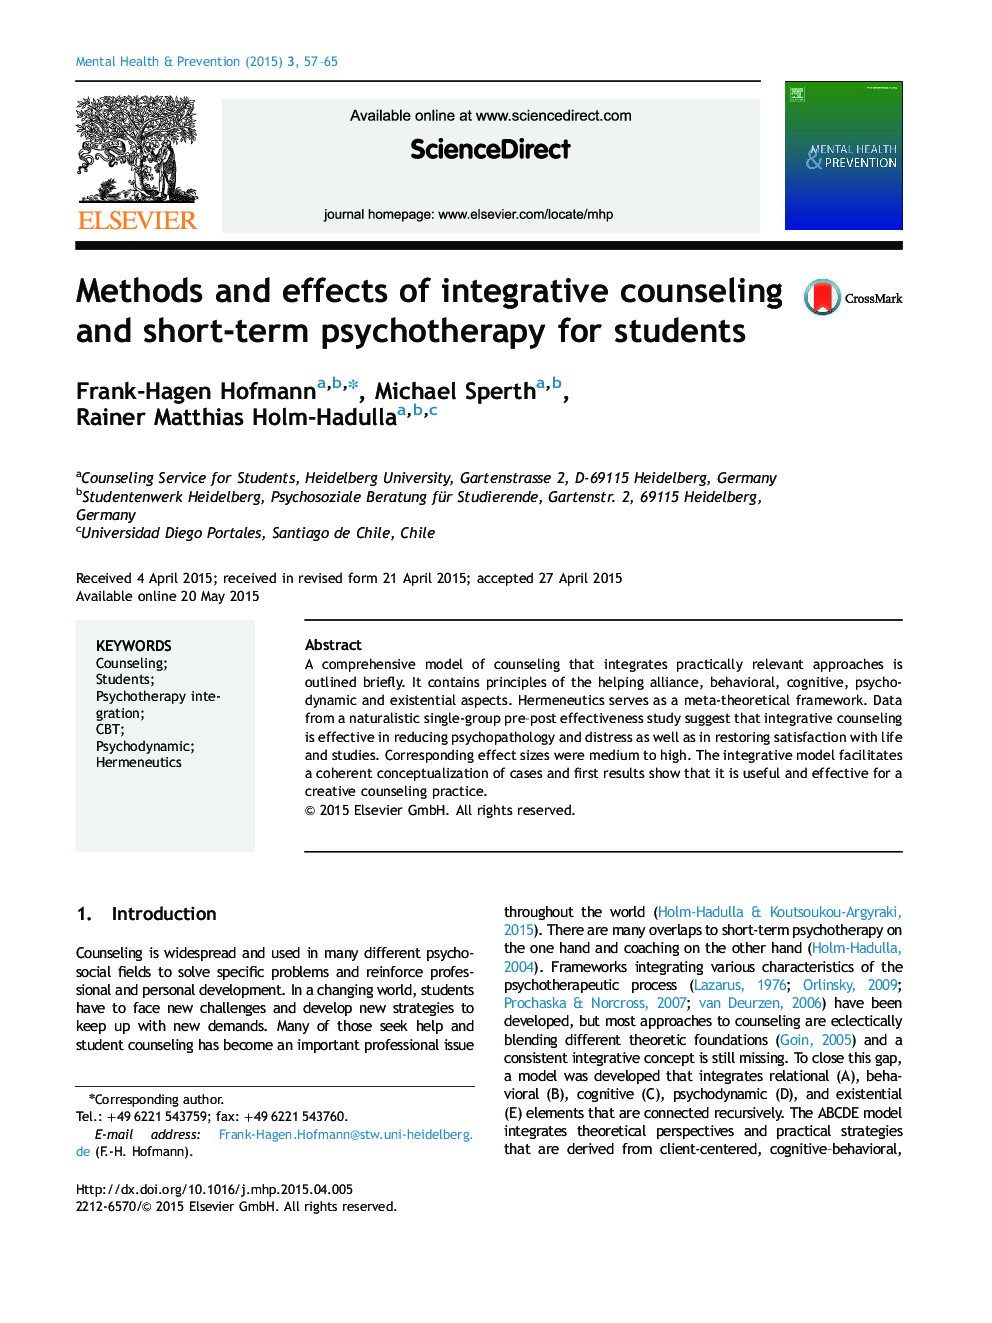 روش ها و اثرات مشاوره ی یکپارچه سازی و روان درمانی کوتاه مدت برای دانش آموزان 